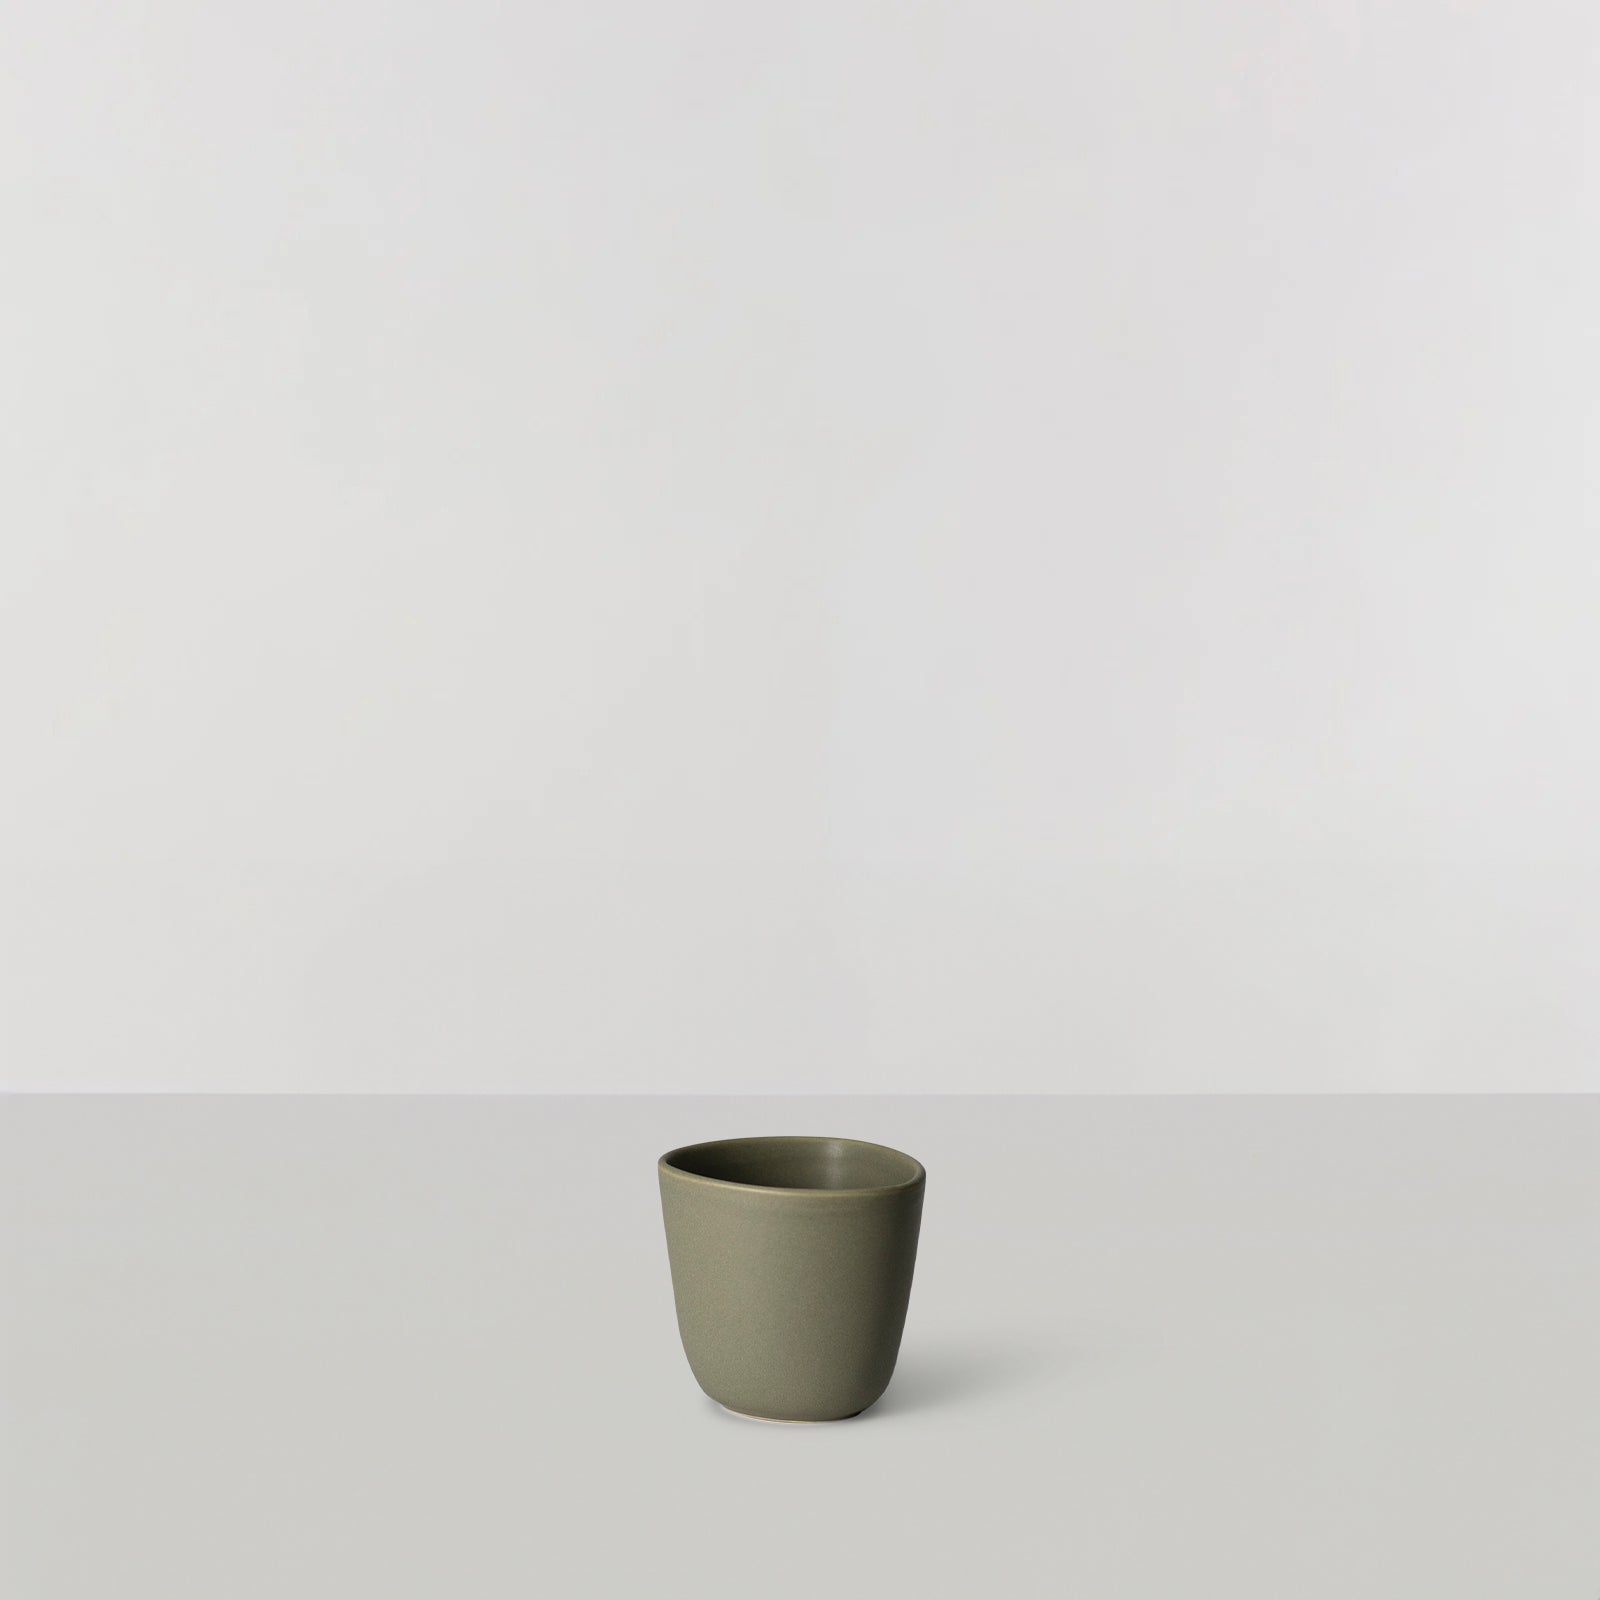 Billede af Signature Cup, Latte - Pale green